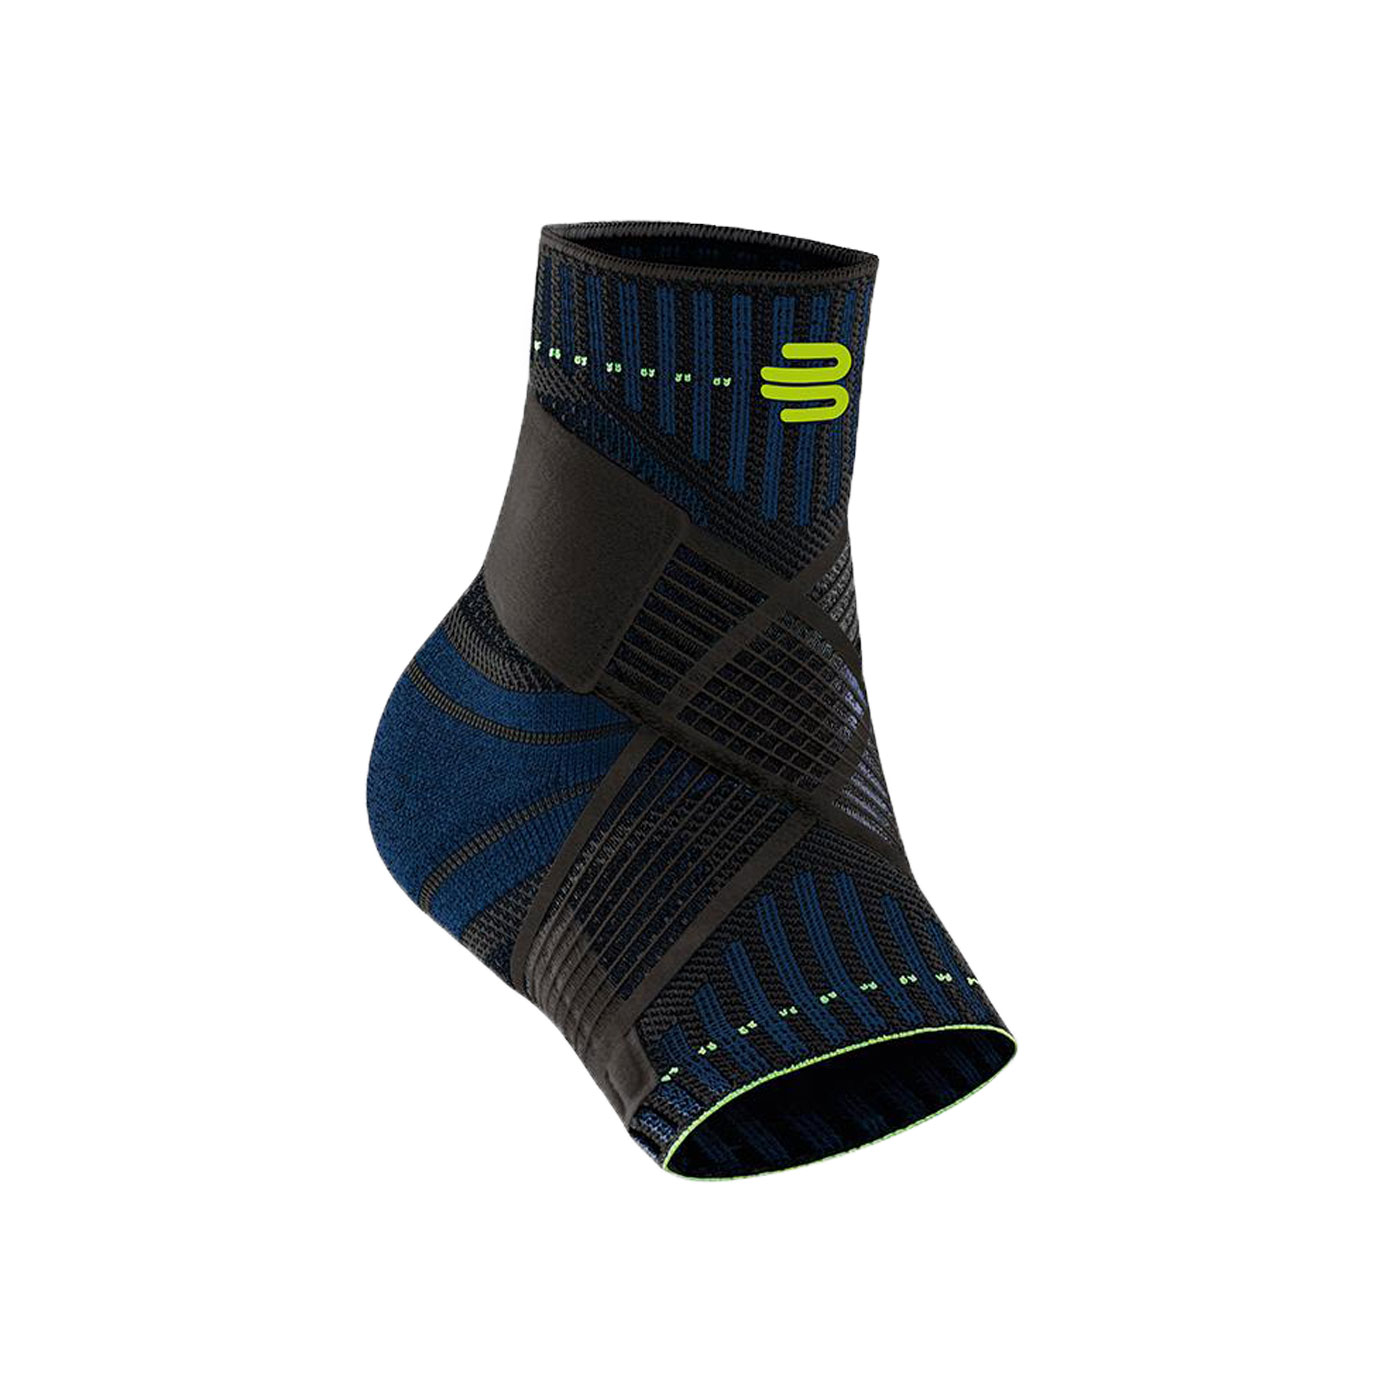 BAUERFEIND保爾範 專業運動支撐帶型護踝(左腳) 11419401170-71 - 黑藍螢光綠